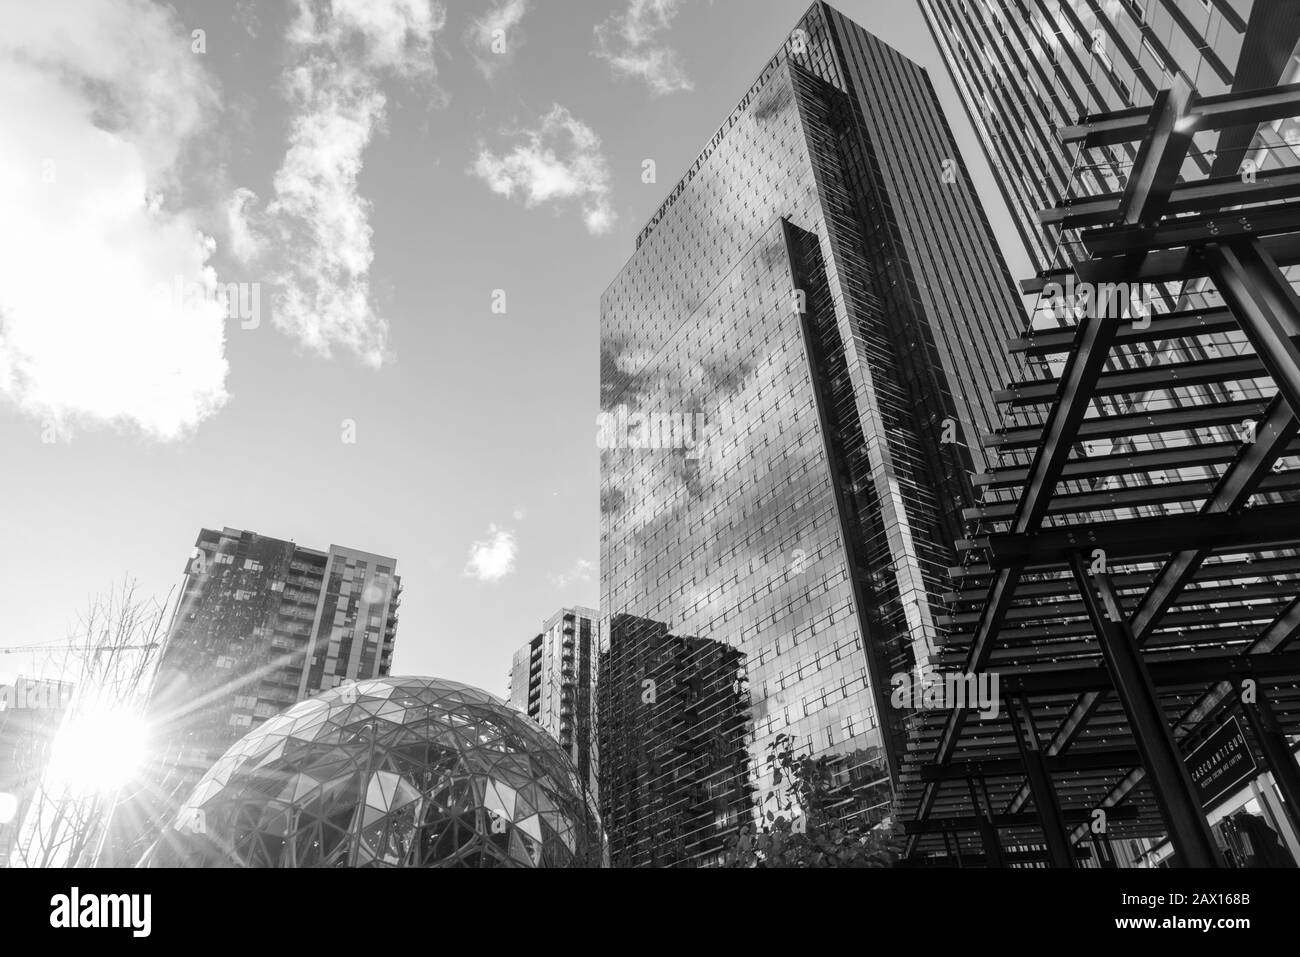 In bianco e nero, guarda le nuove torri degli uffici della sede centrale del mondo Amazon nel centro di Seattle con Sfere e riflessi solari. Foto Stock